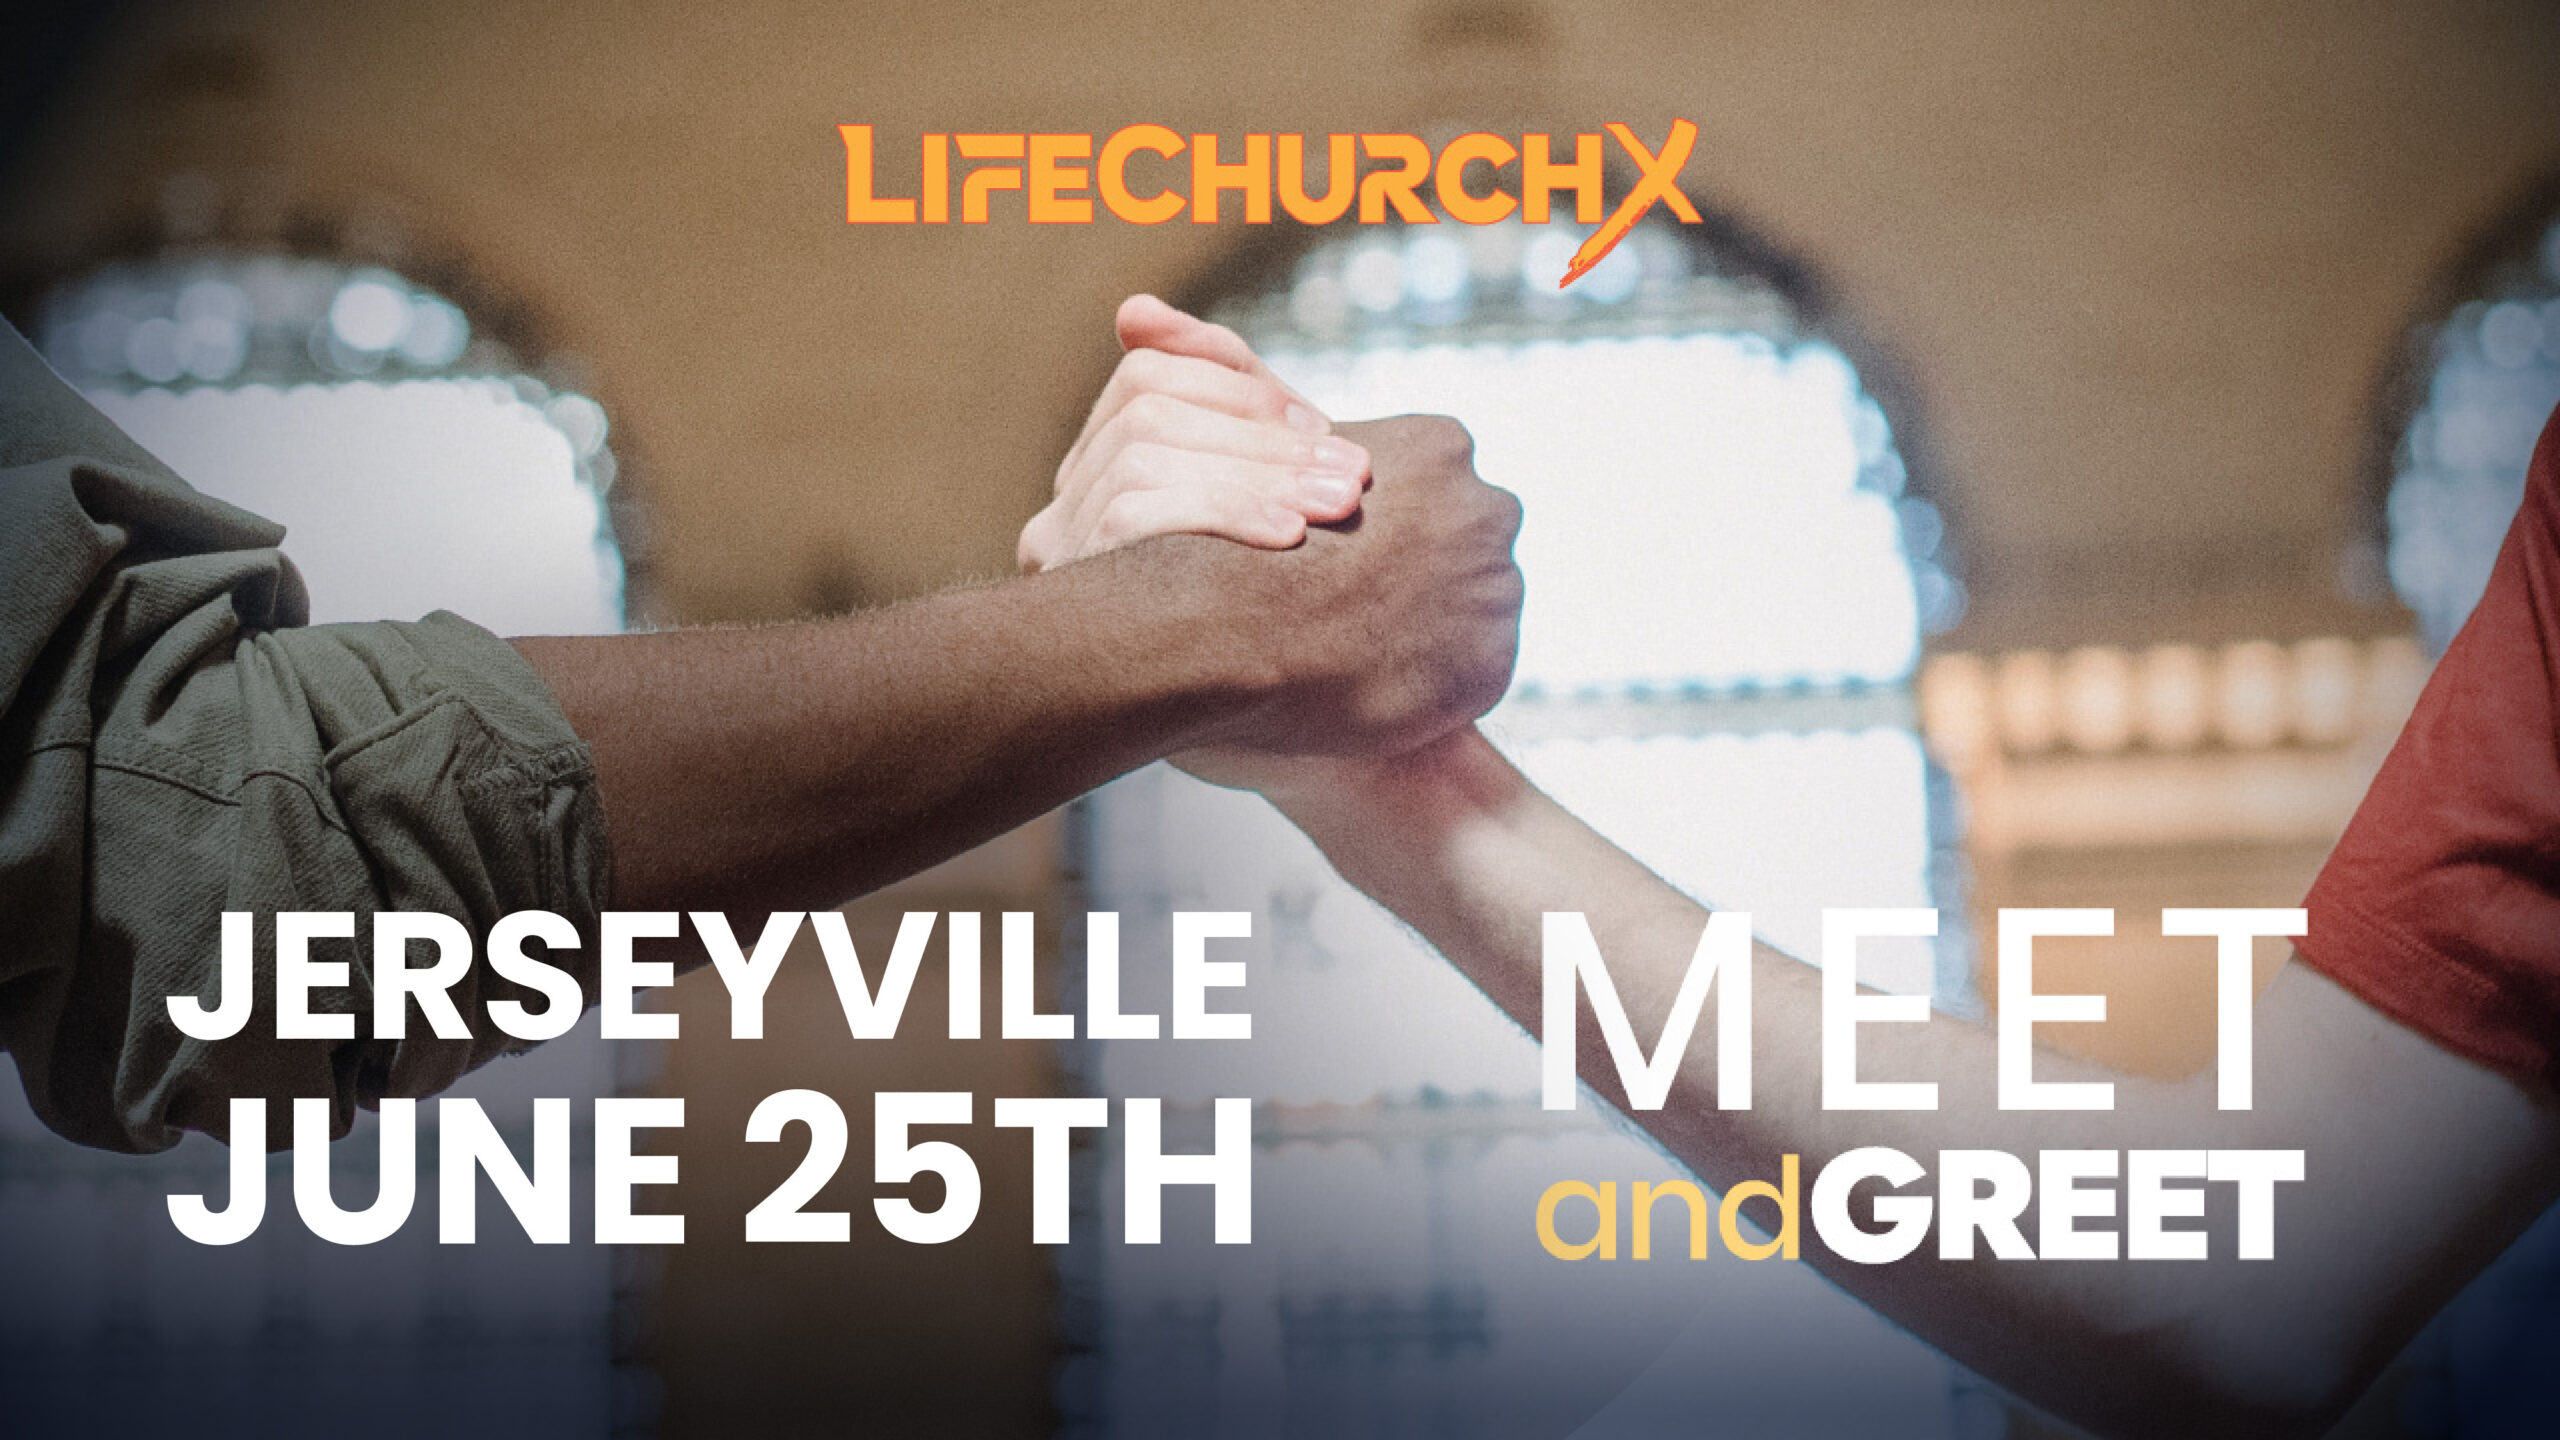 LifechurchX Meet and Greet Jerseyville, IL